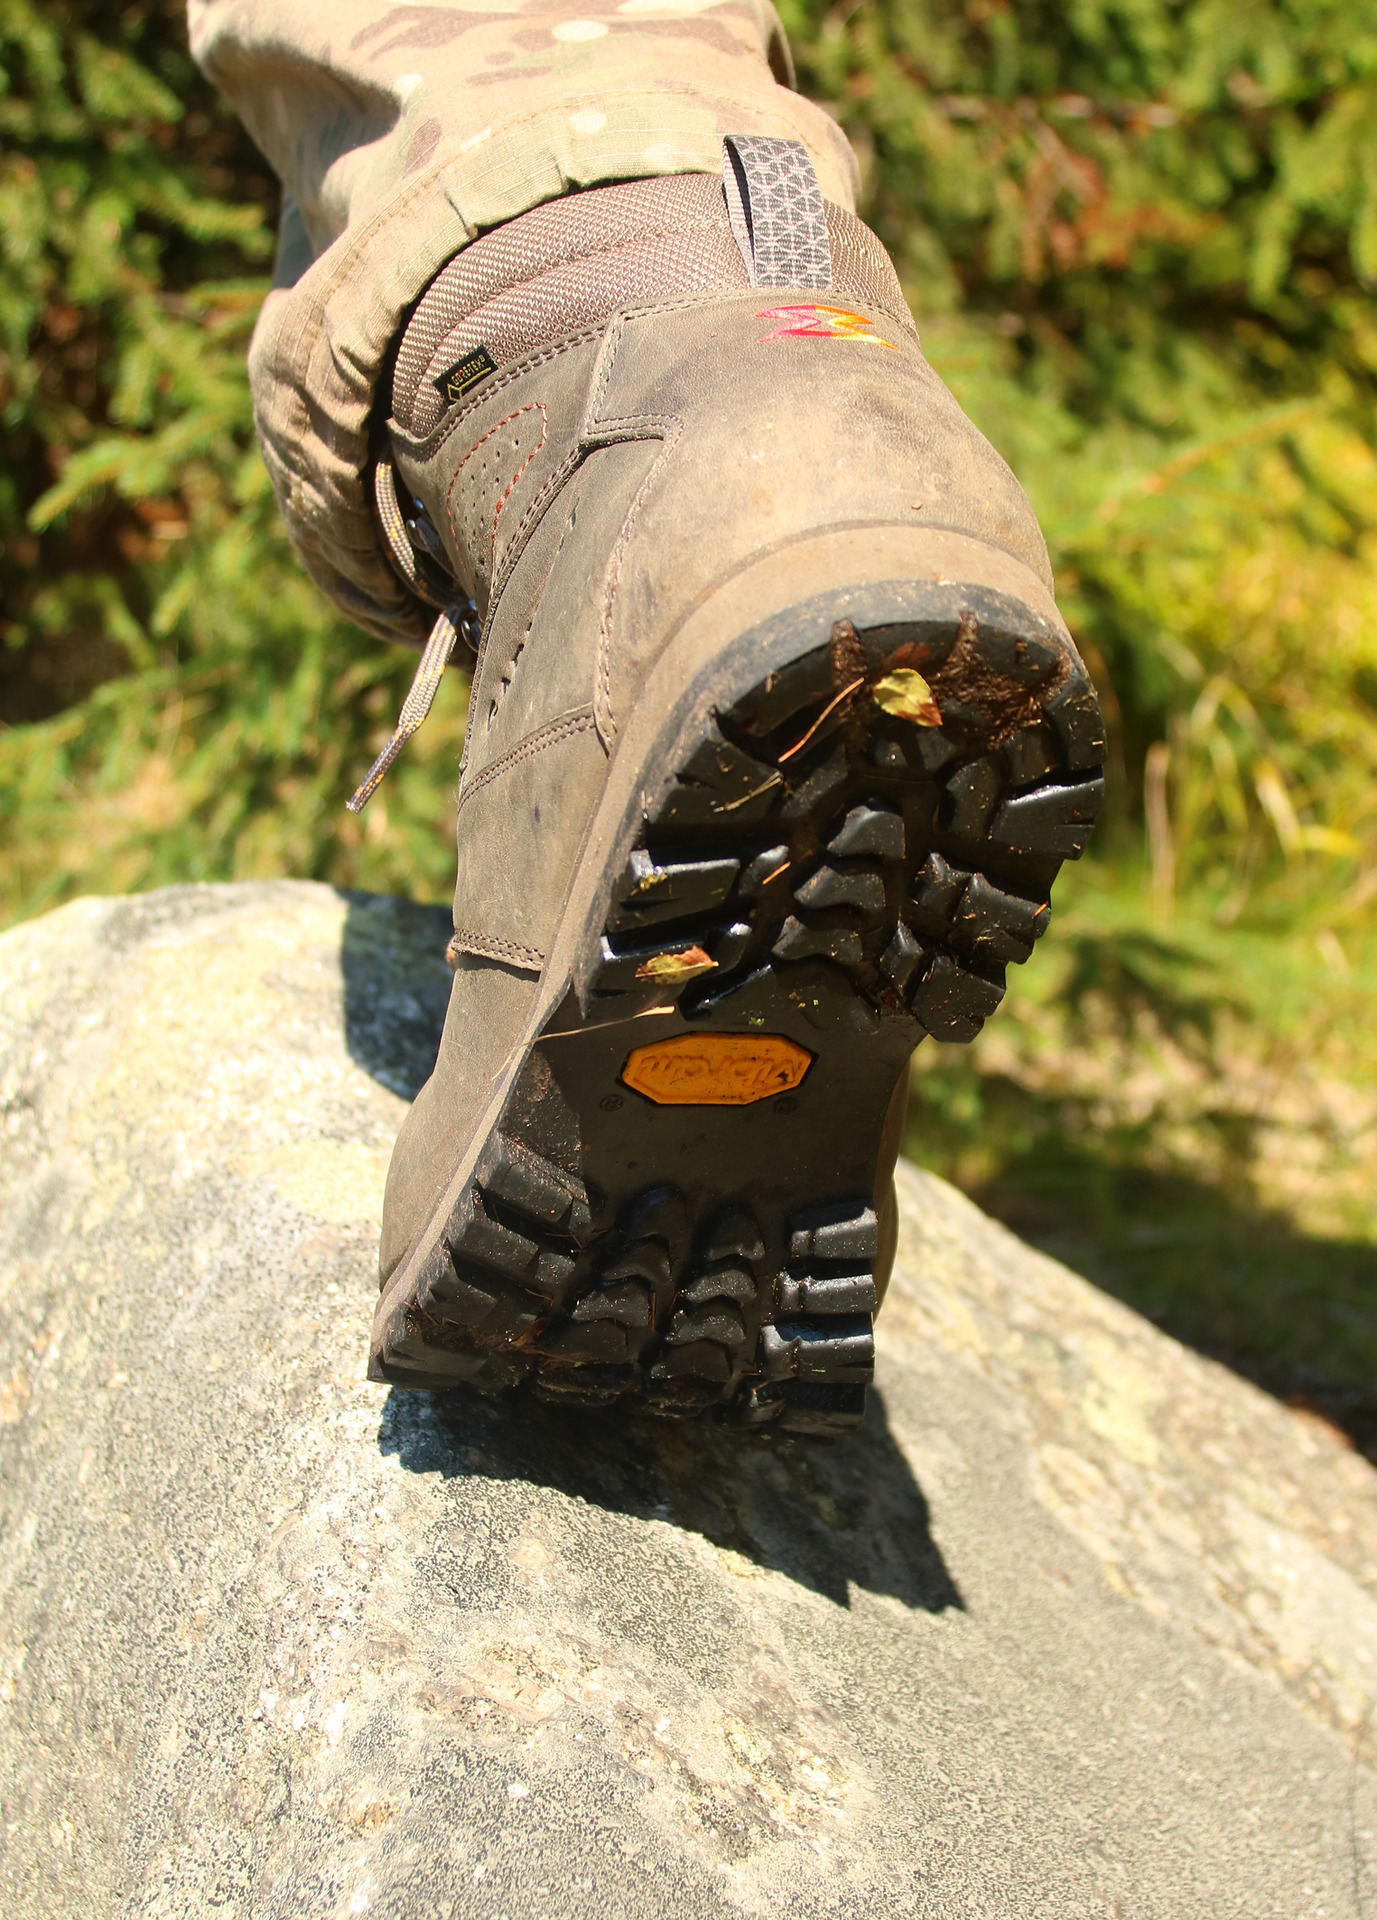 Treková a outdoorová obuv Garmont je opatřena spolehlivou a účinnou podrážkou opatřenou patentovaným vzorkem Vibram Winkler.